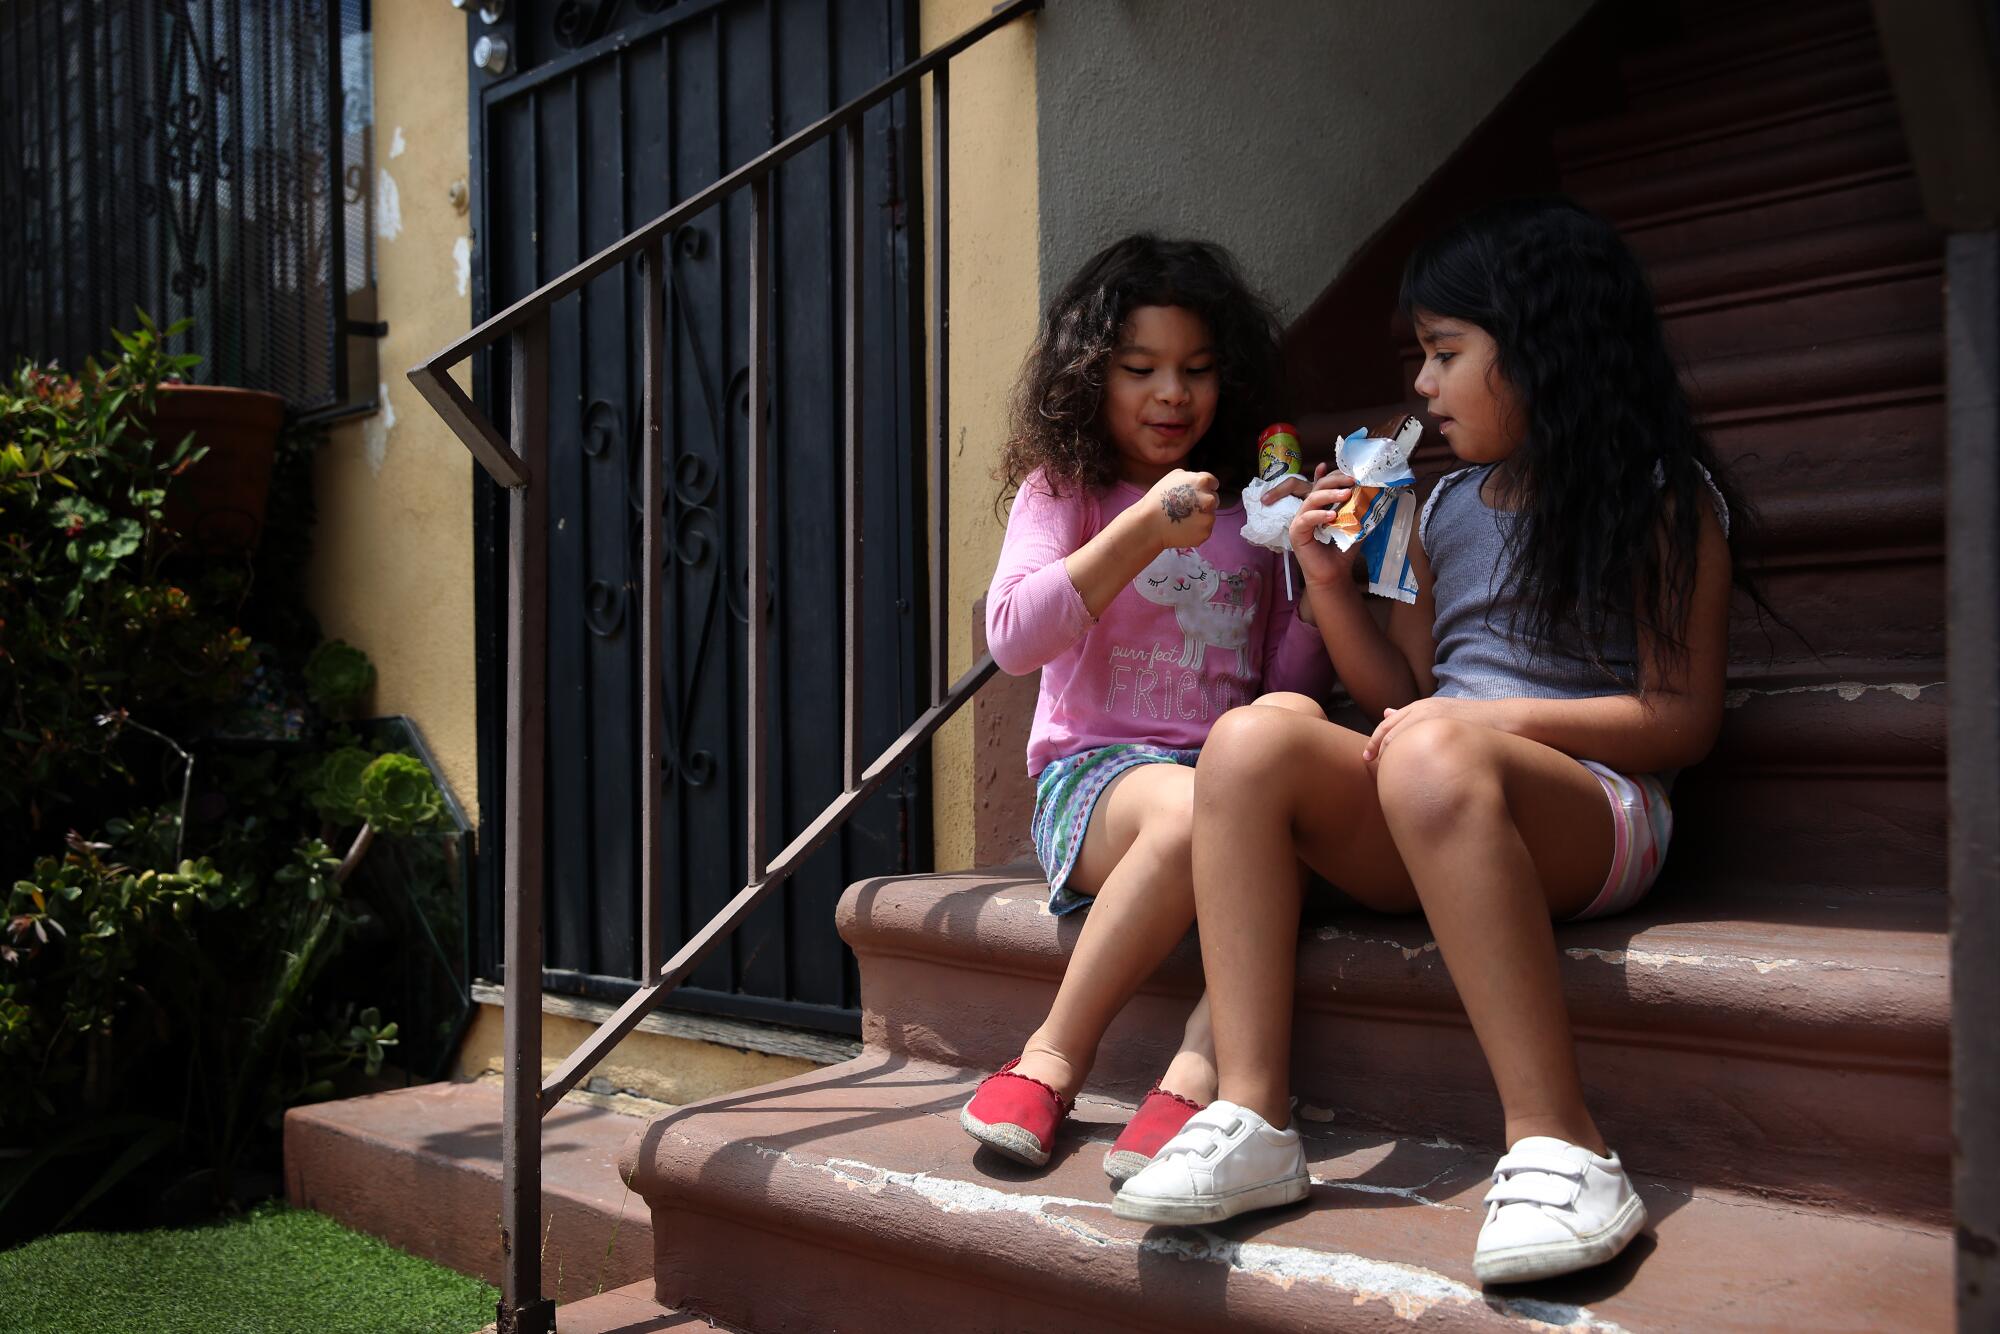 Elizabeth Sanchez, left, 5, and Mia Estrada, 6, eat ice cream at their apartment complex.